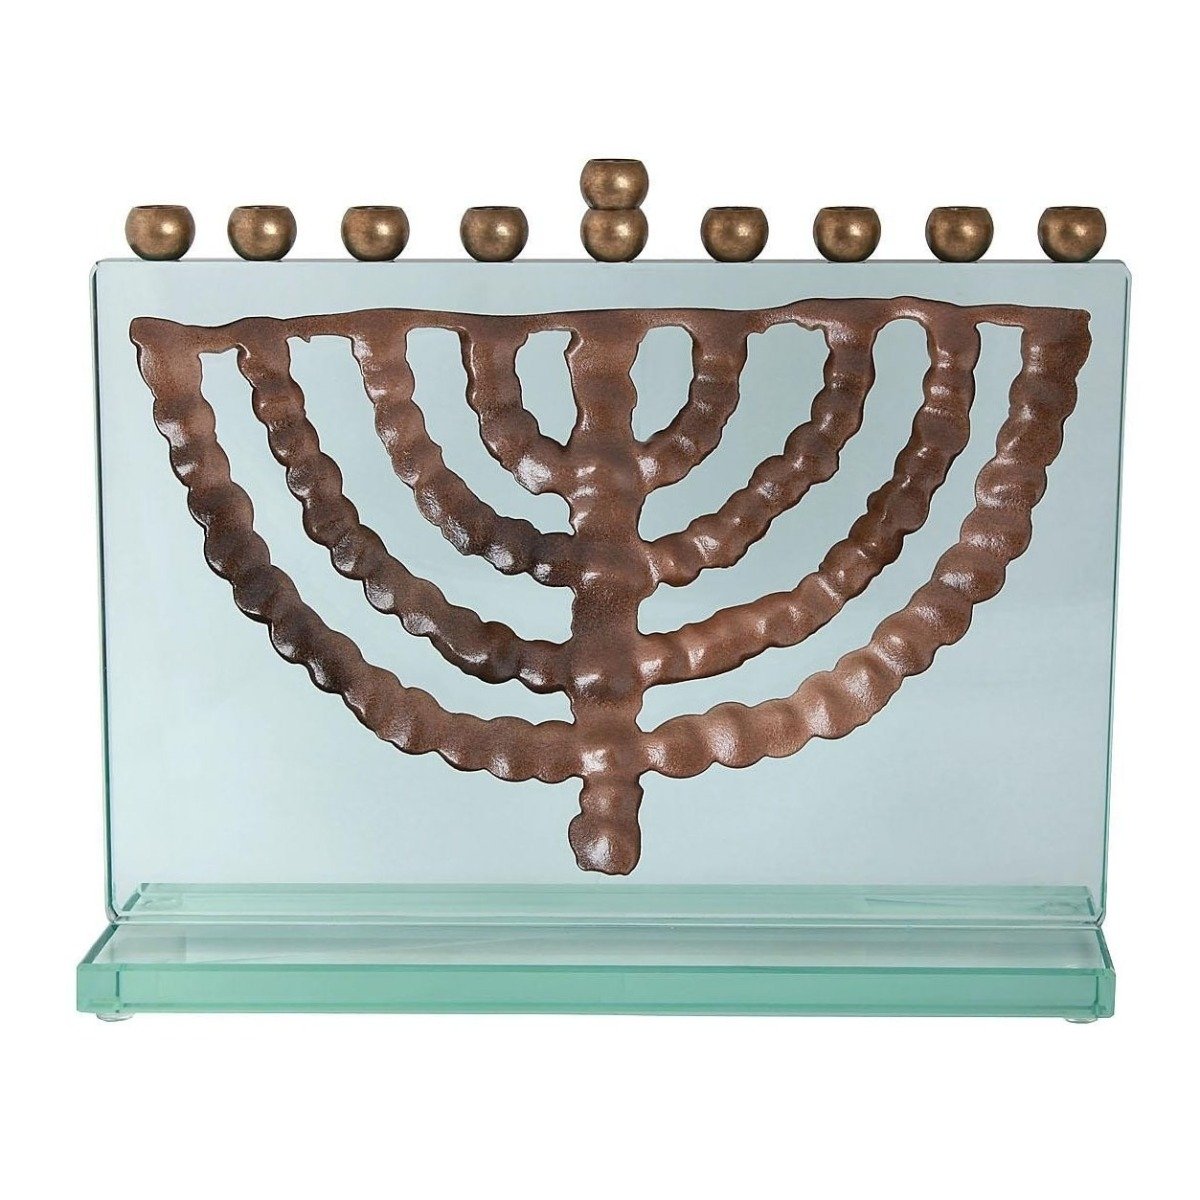 Our Favorite Israel Museum Replicas for Hanukkah